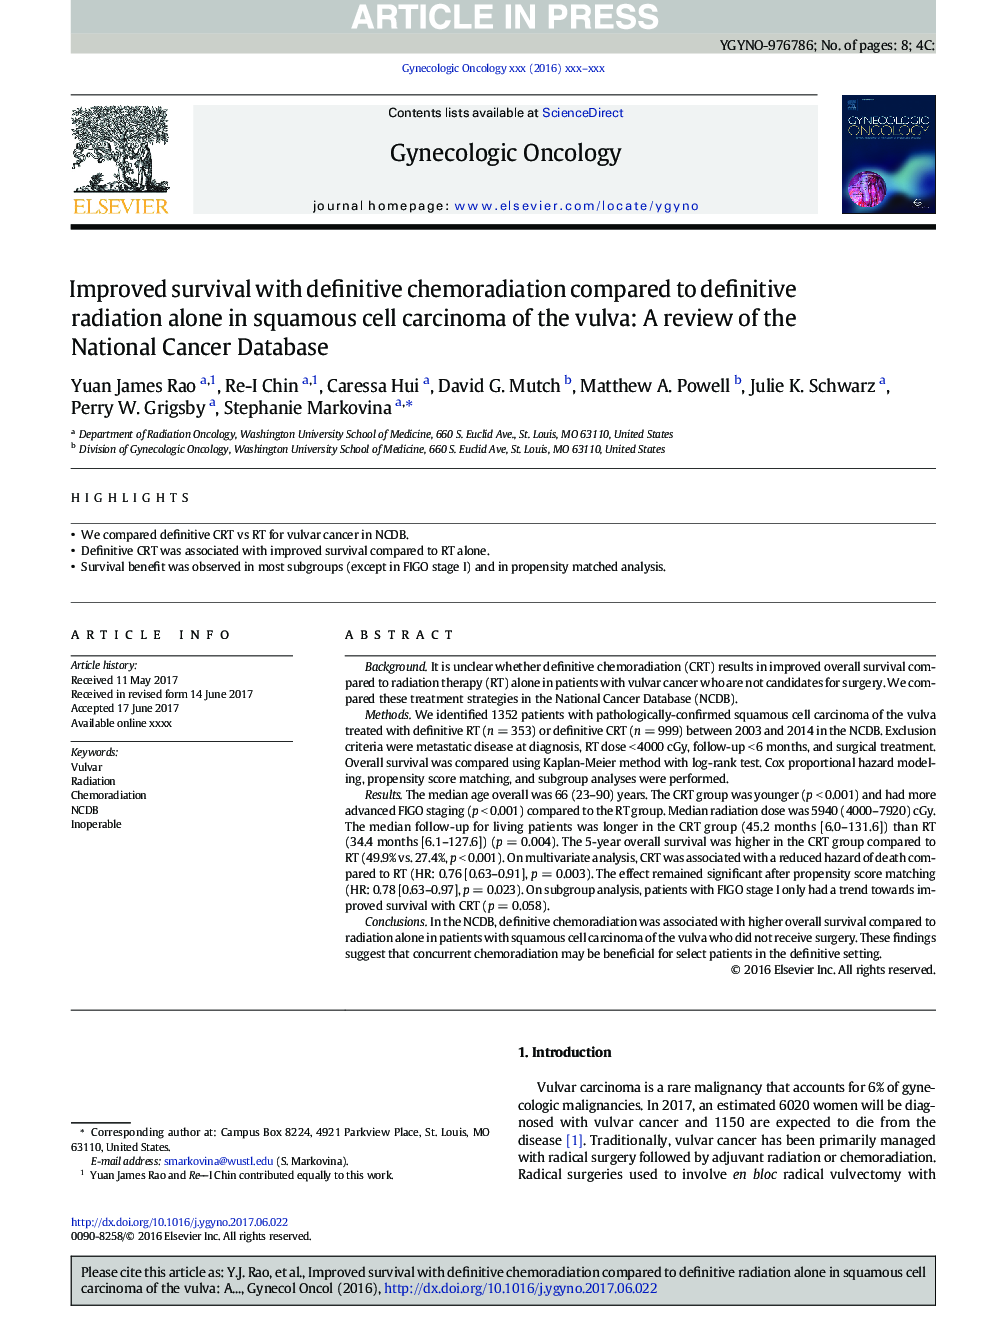 بقای بهبود یافته با تغییر شیمیایی قطعی در مقایسه با تشخیص قطعی به تنهایی در کارسینوم سلول سنگفرشی ولو: بررسی پایگاه ملی سرطان 